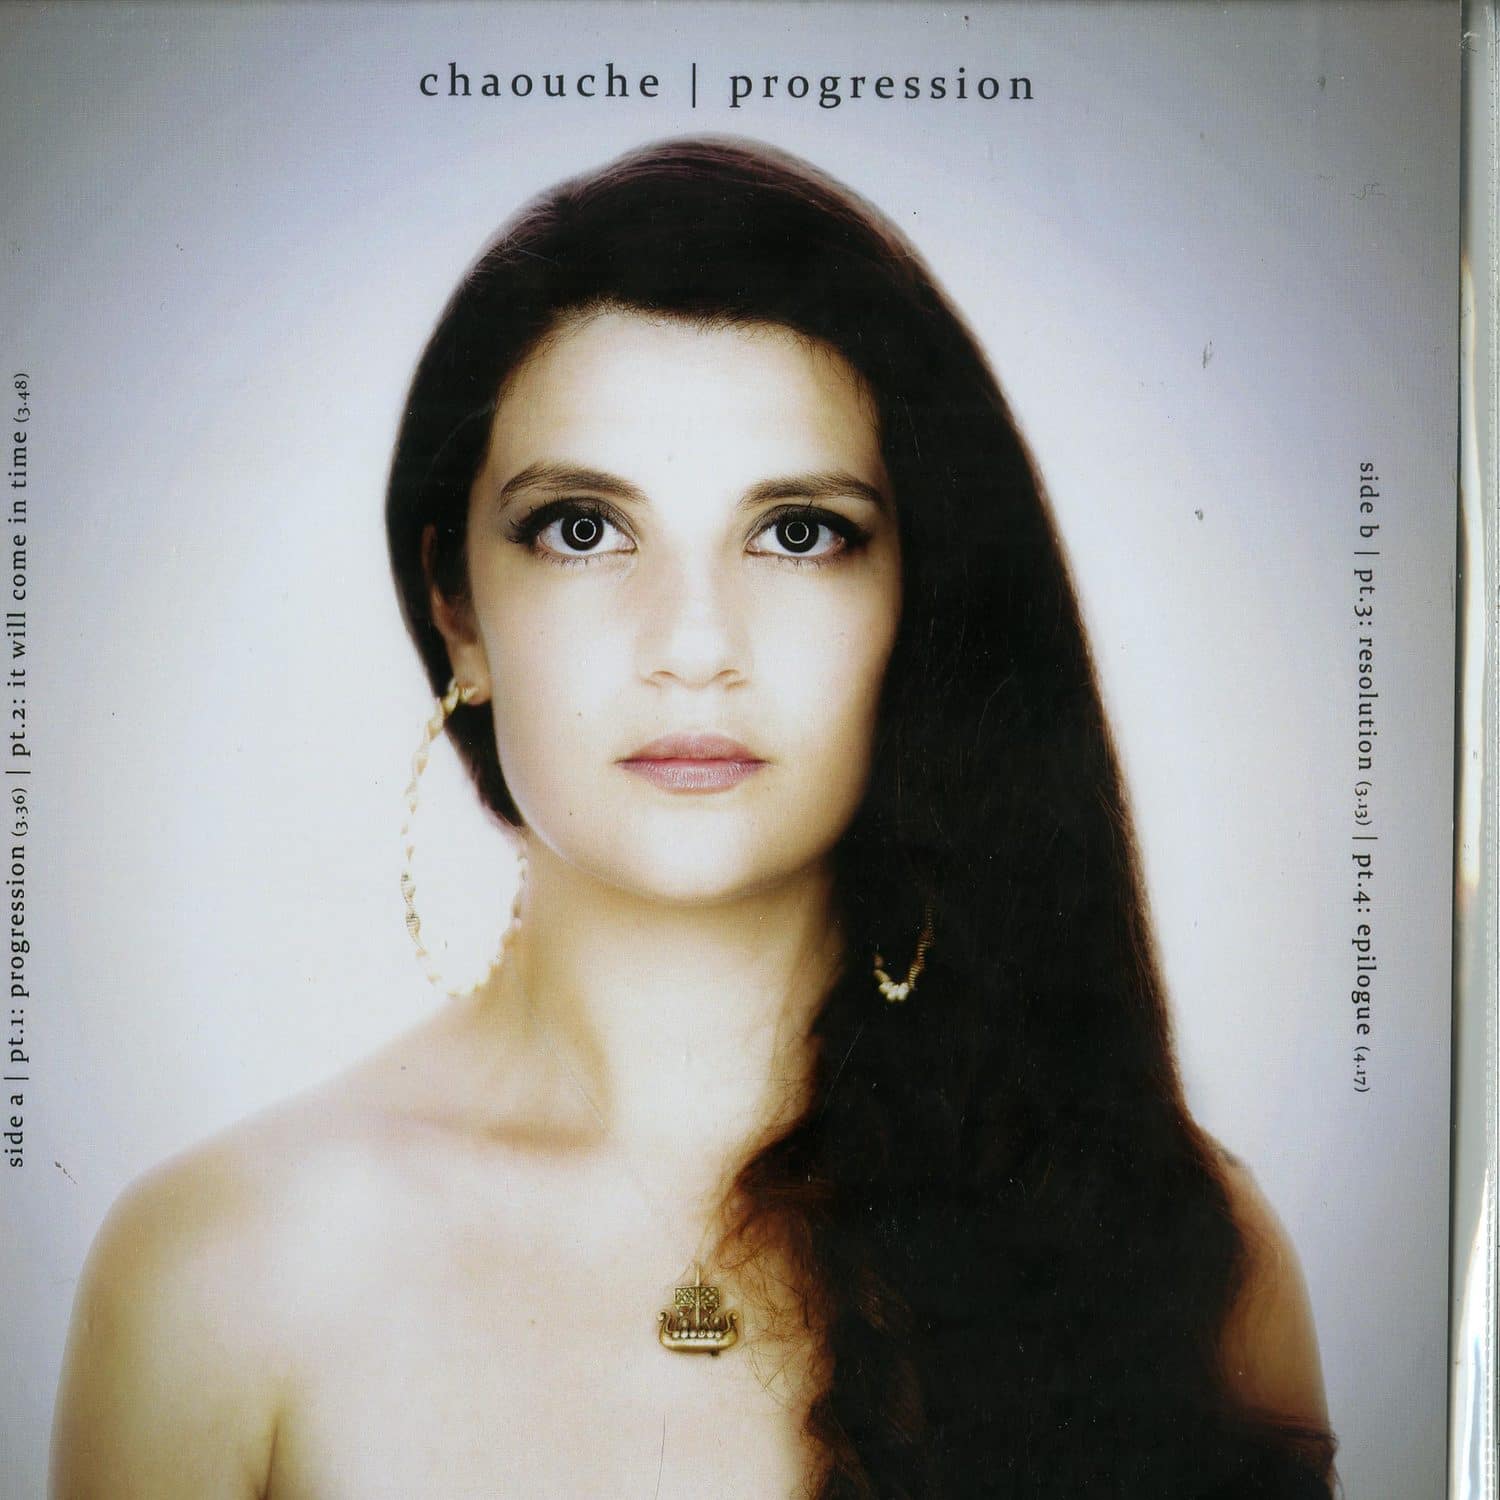 Chaouche - PROGRESSION EP 